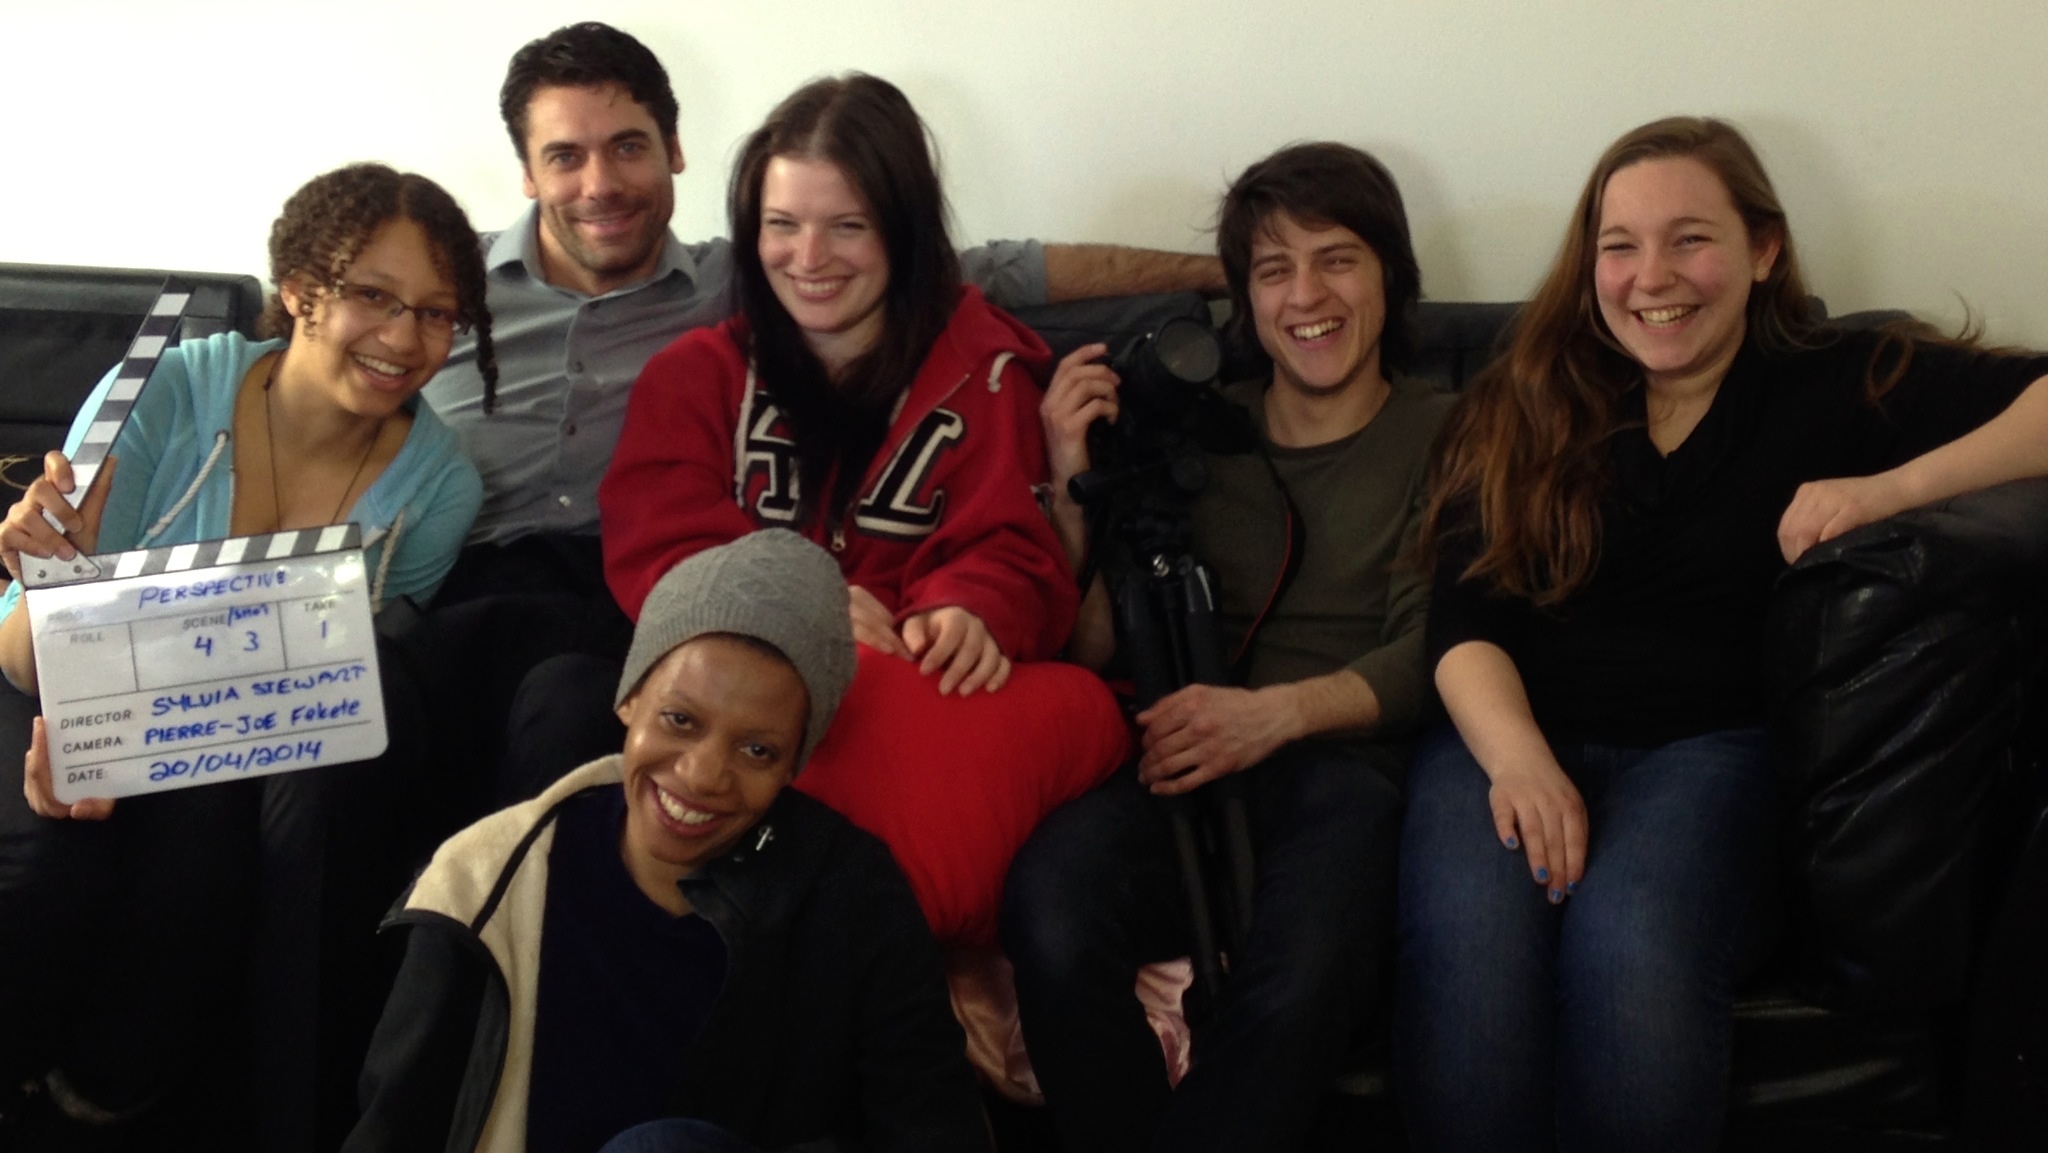 Cast and Crew of HER PERSPECTIVE (2014) (Left to right) Sage Stewart-La Bonté, Chris Blais, Melissa Couto, Sylvia Stewart, Pierre-Joe Fekete, Jaelle Dutremble-Rivet.